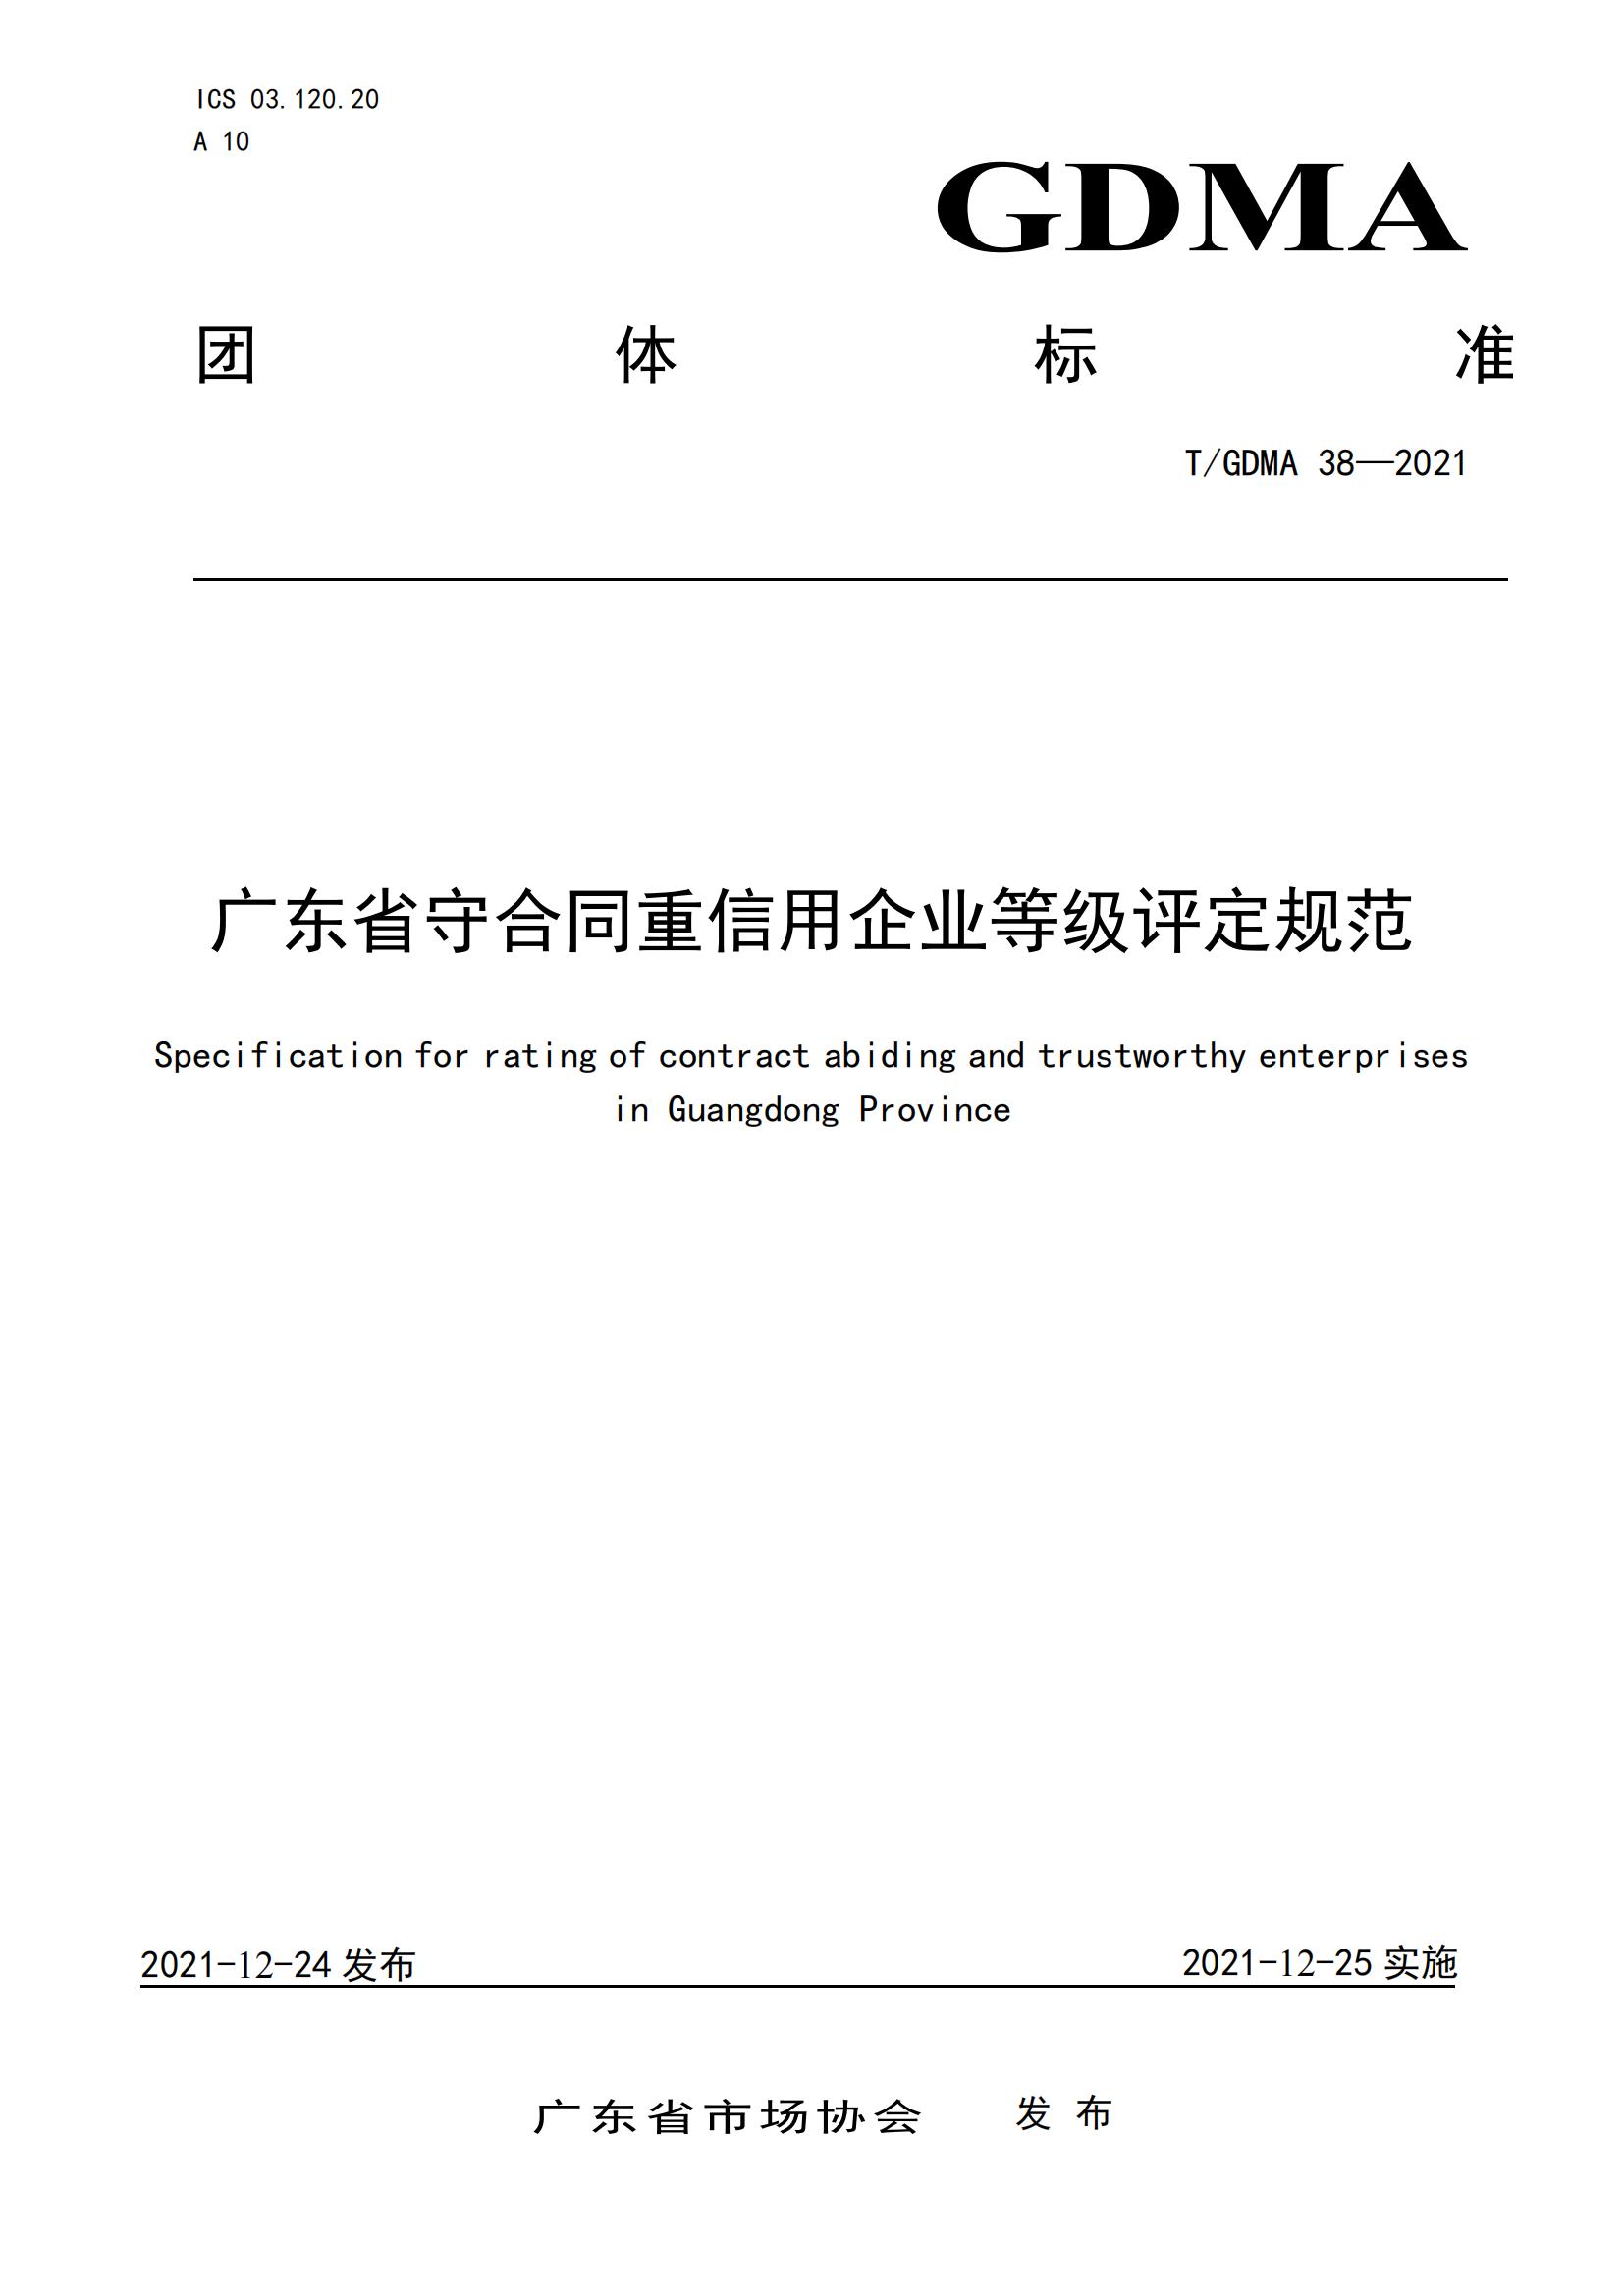 TGDMA 38 广东省守合同重信用企业等级评定规范-发布稿_00.jpg